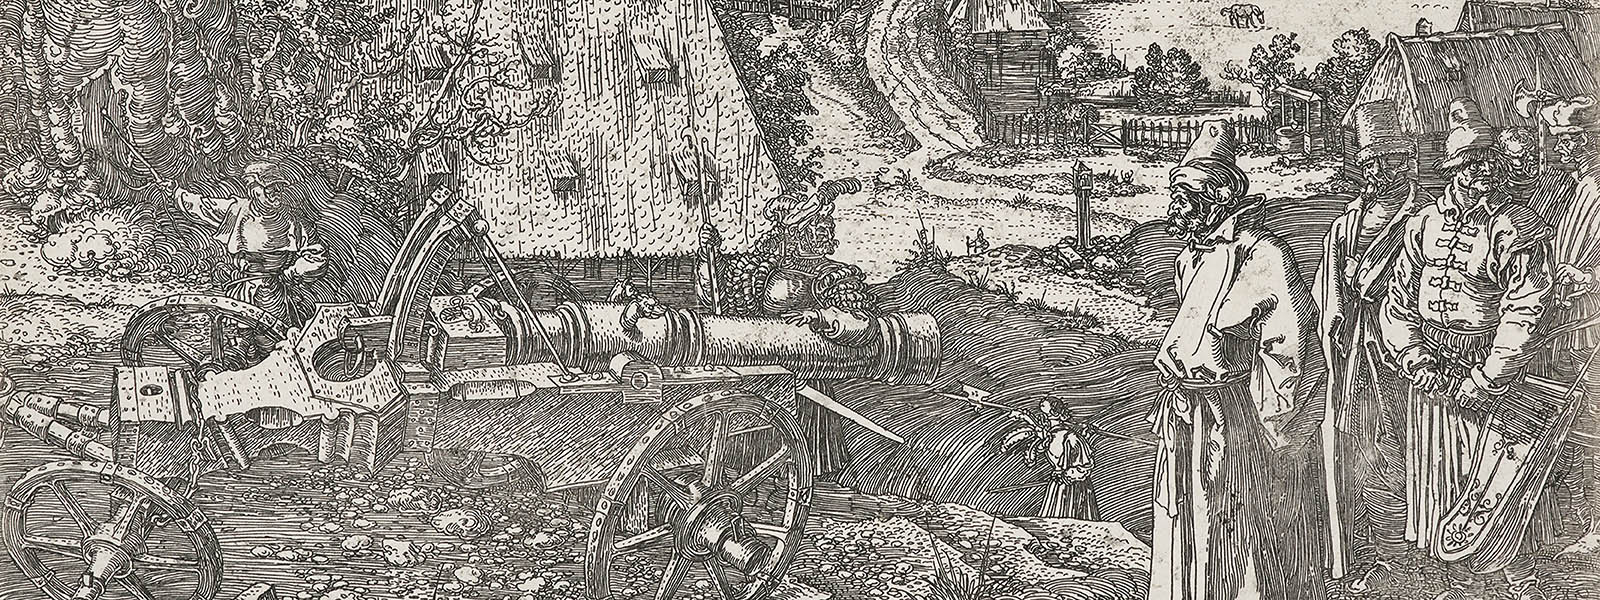 Albrecht Dürer’s Material World